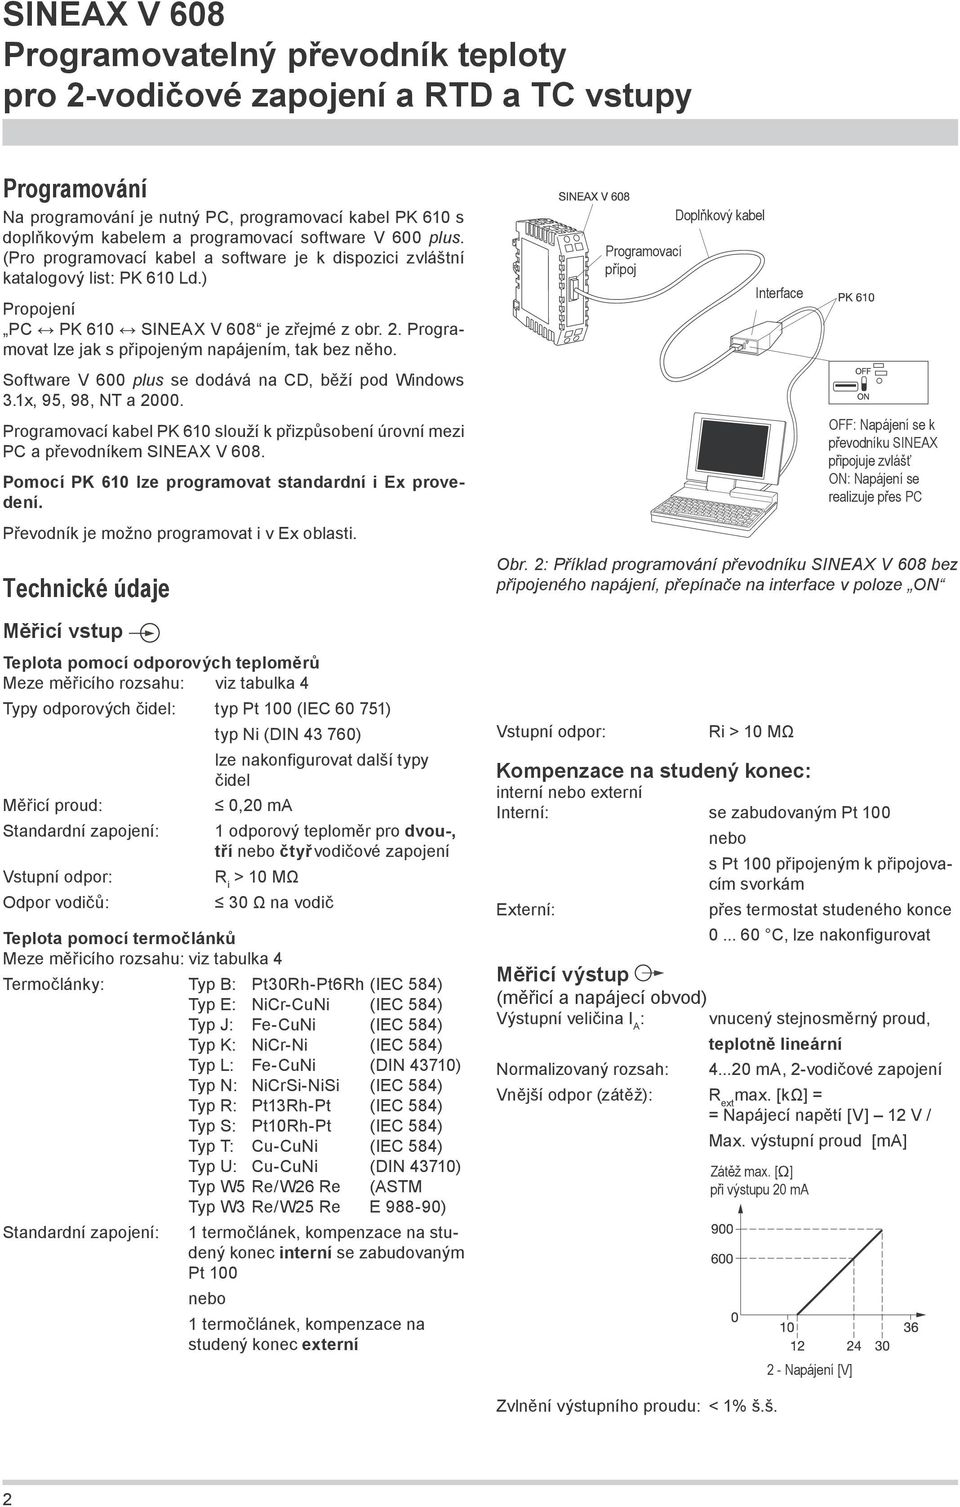 Software V 600 plus se dodává na CD, běží pod Windows 3.1x, 95, 98, NT a 2000. Programovací kabel PK 610 slouží k přizpůsobení úrovní mezi PC a převodníkem SINEAX V 608.